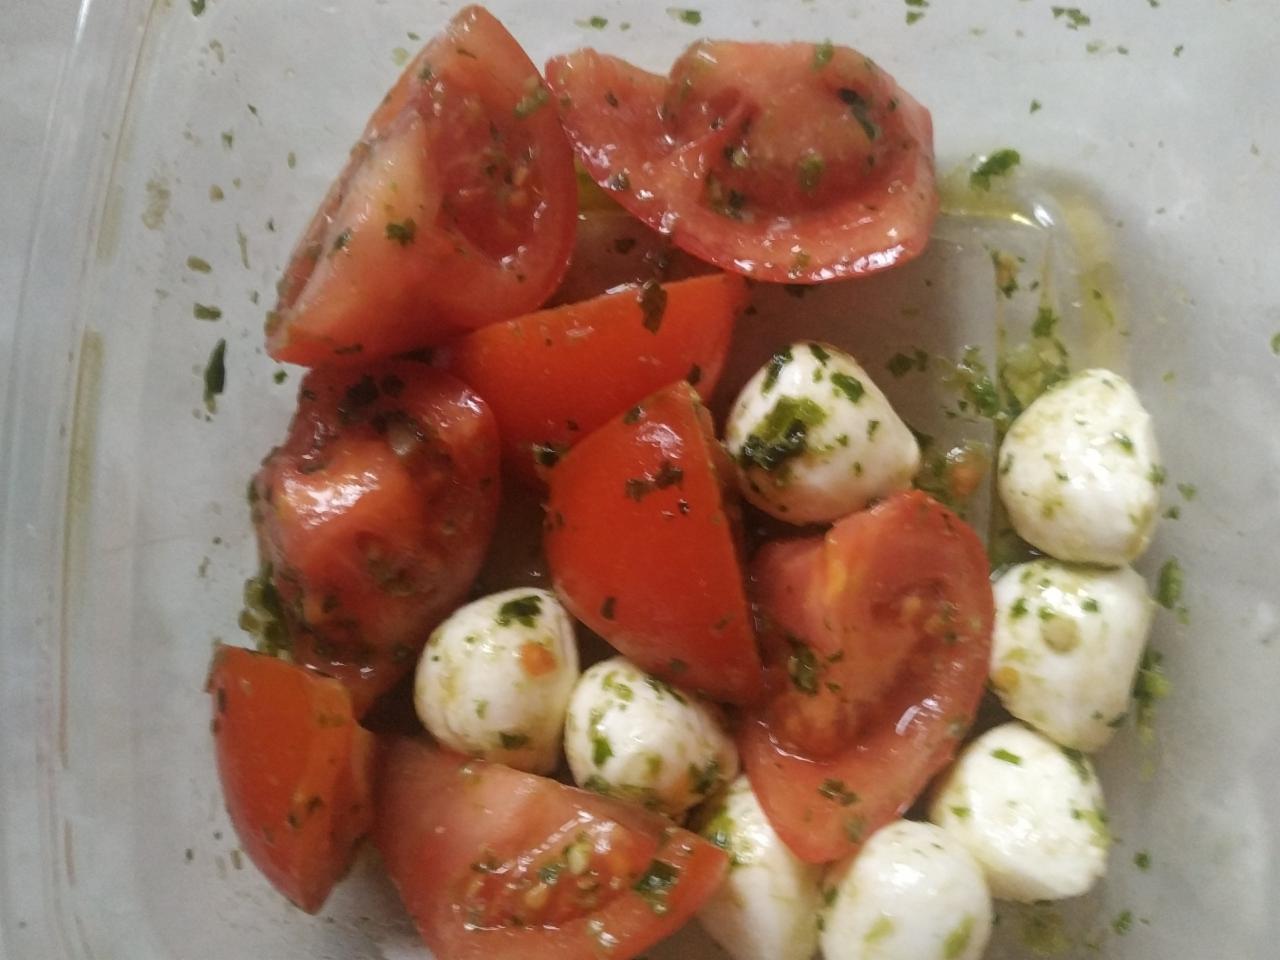 Фото - салат помидоры с моцареллой Братья Караваевы